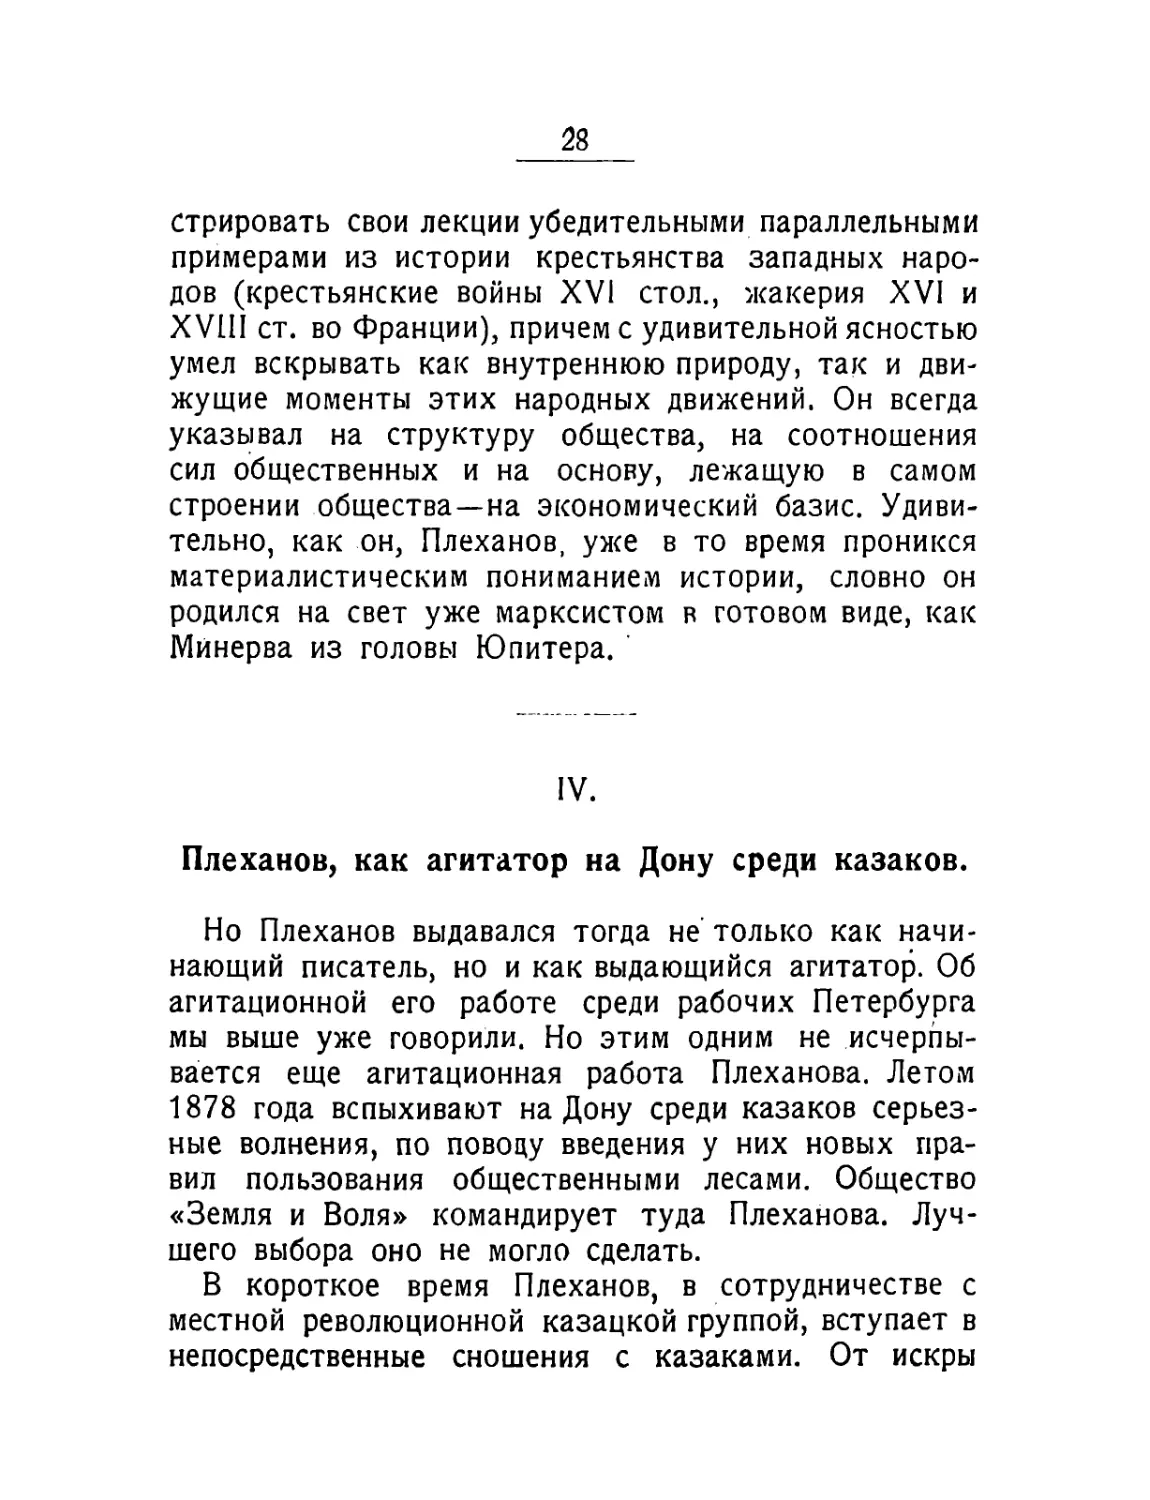 IV. Плеханов, как агитатор на Дону среди казаков